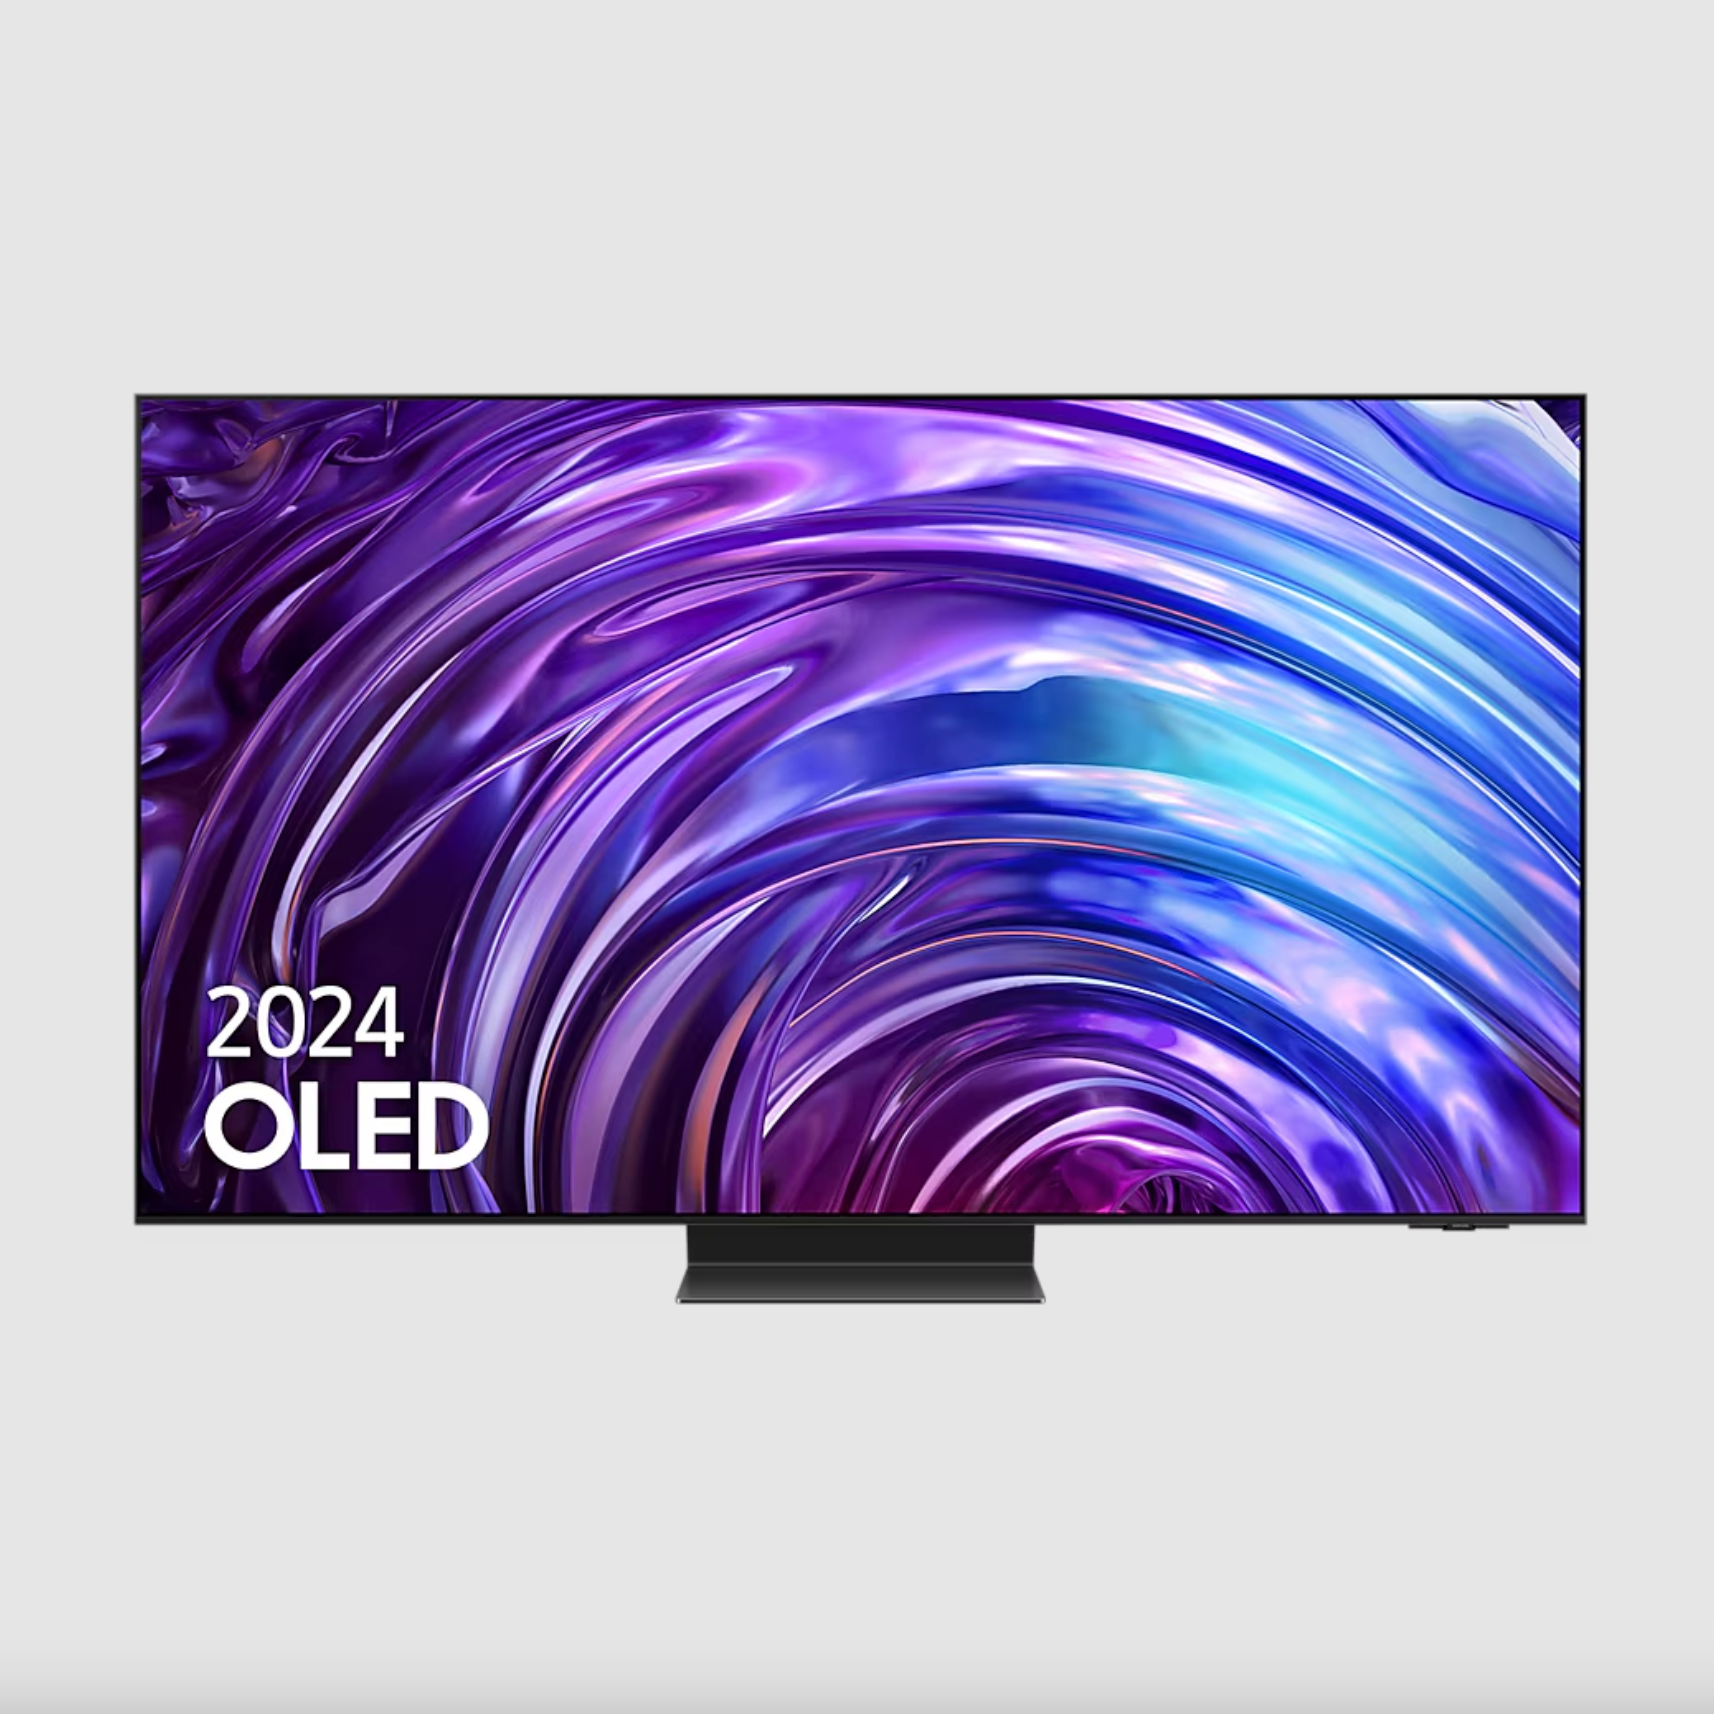 TV S95D OLED 55” 4K Smart TV con IA 2024 - Precio antes de aplicar todos los descuentos
